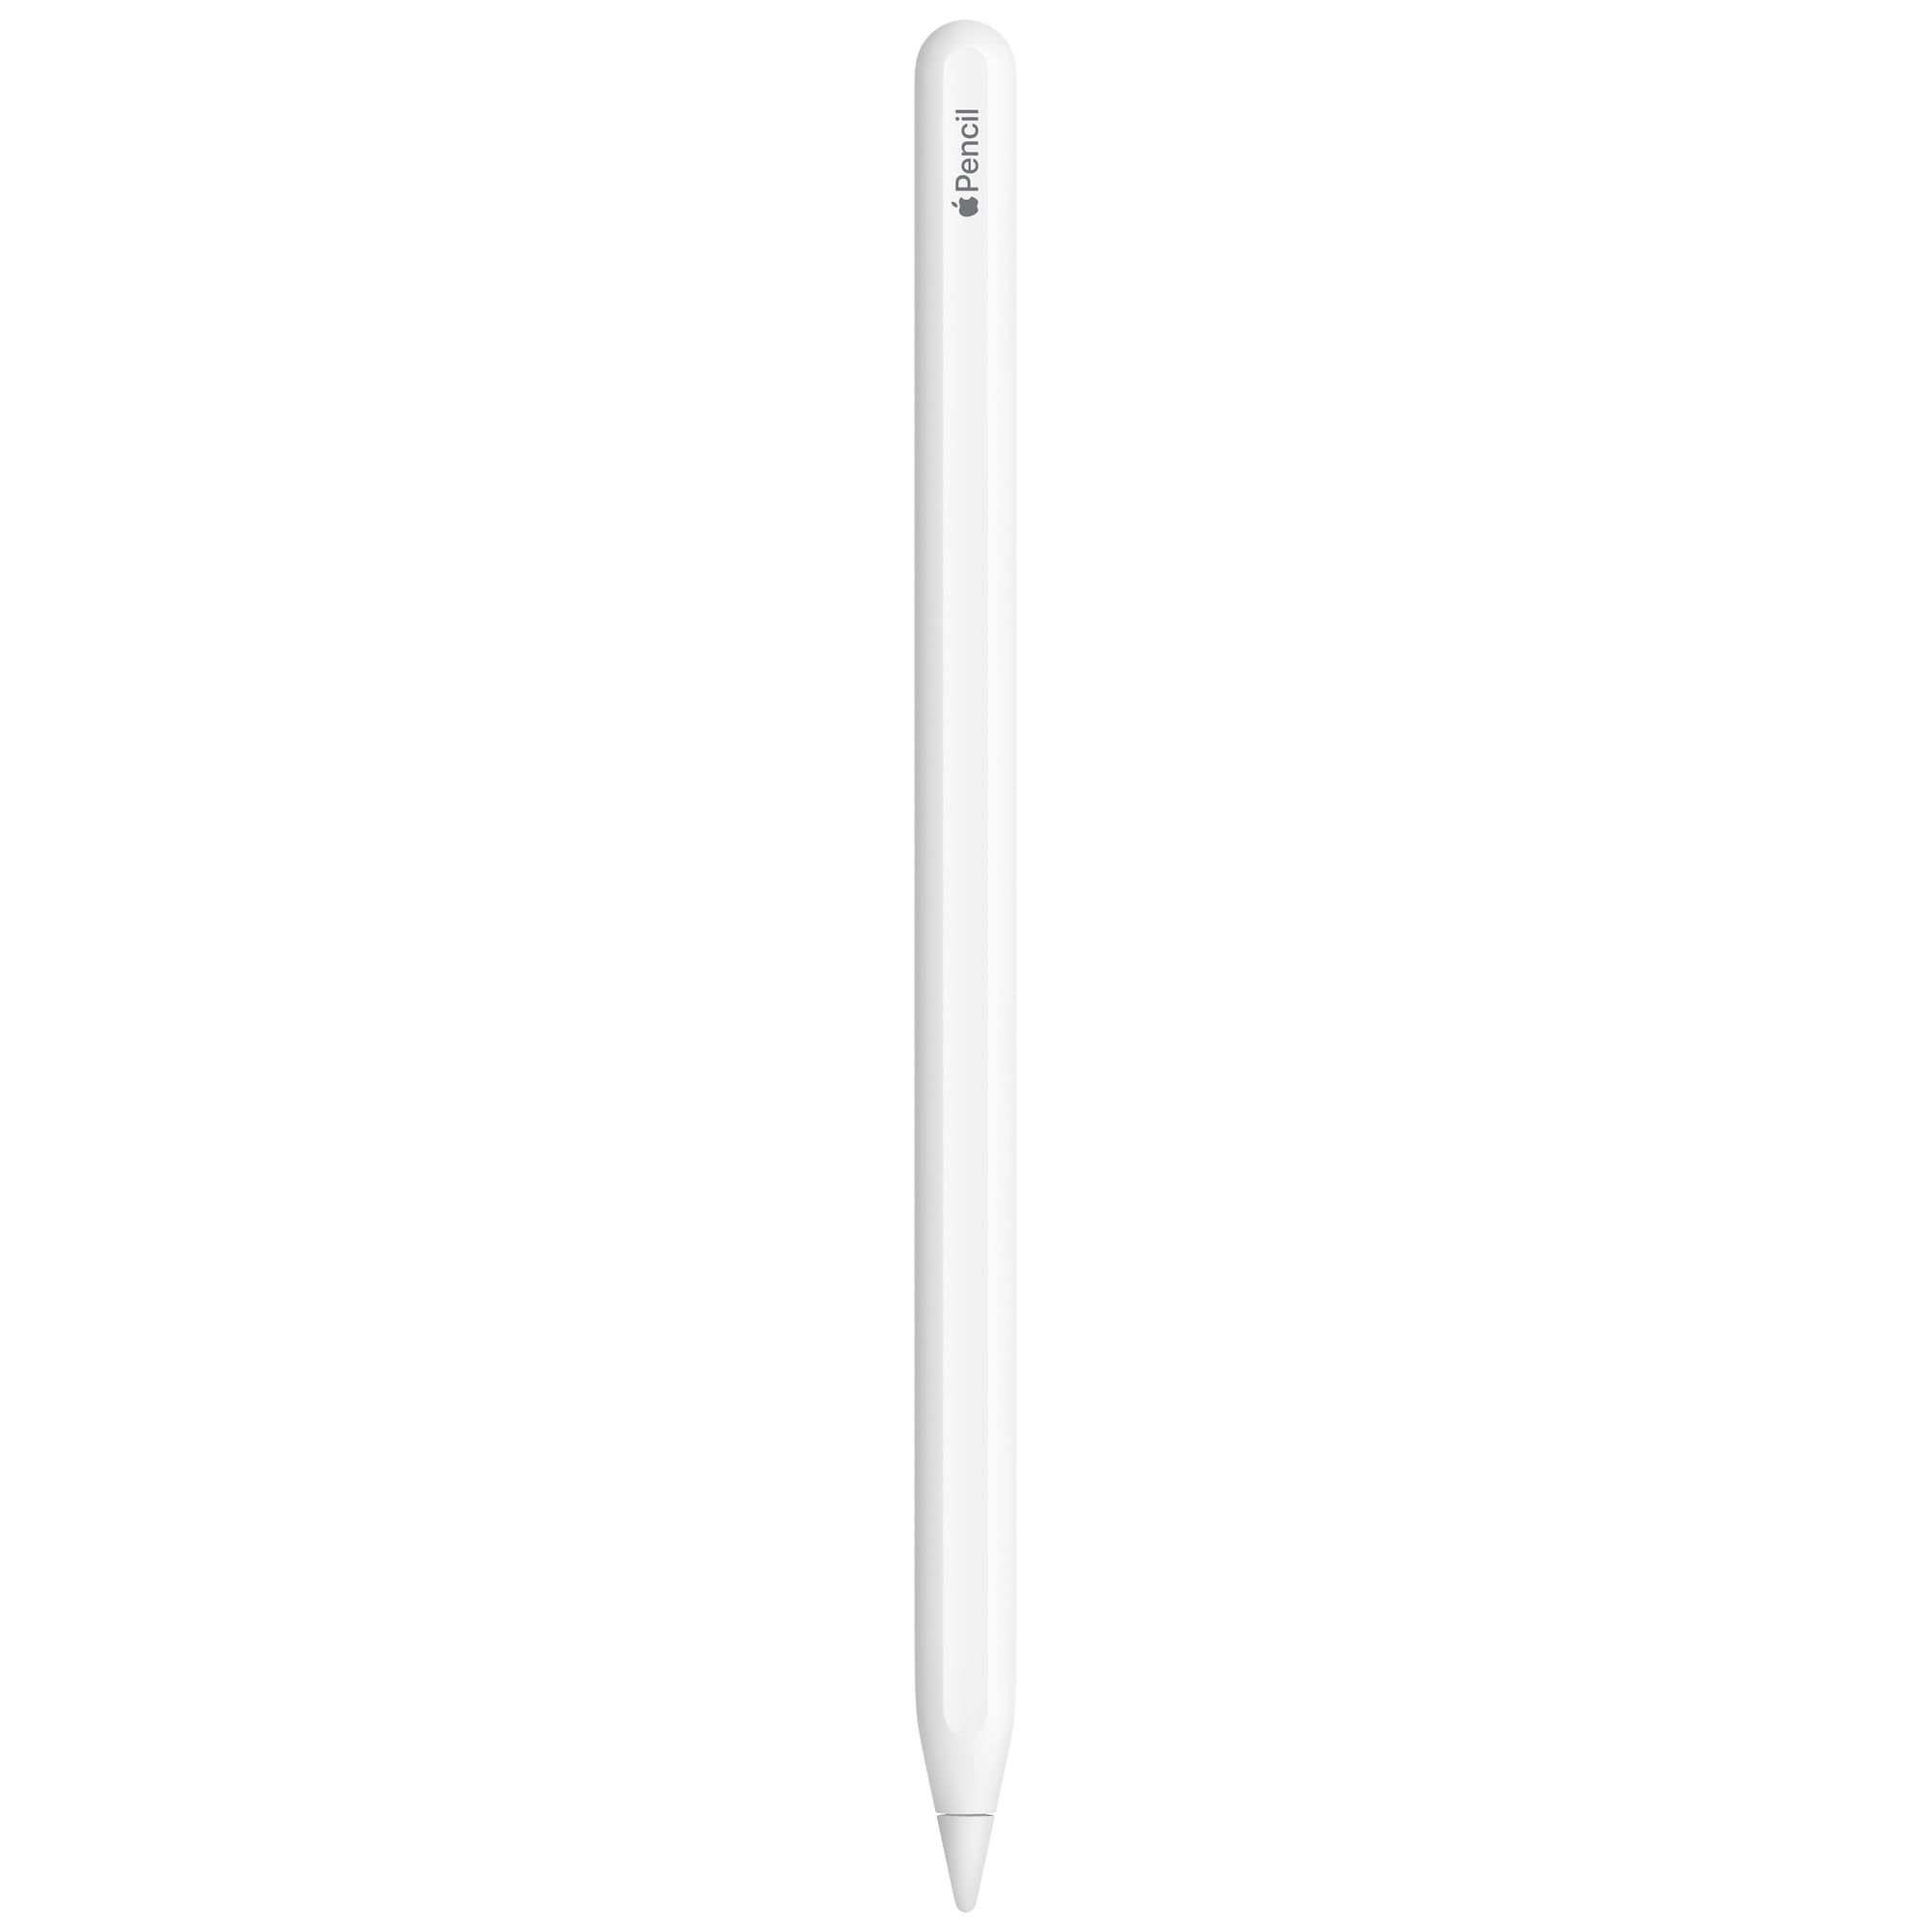 Köp iPad-skal här! Vi har alla tillbehör till din iPad från Apple -  Elgiganten